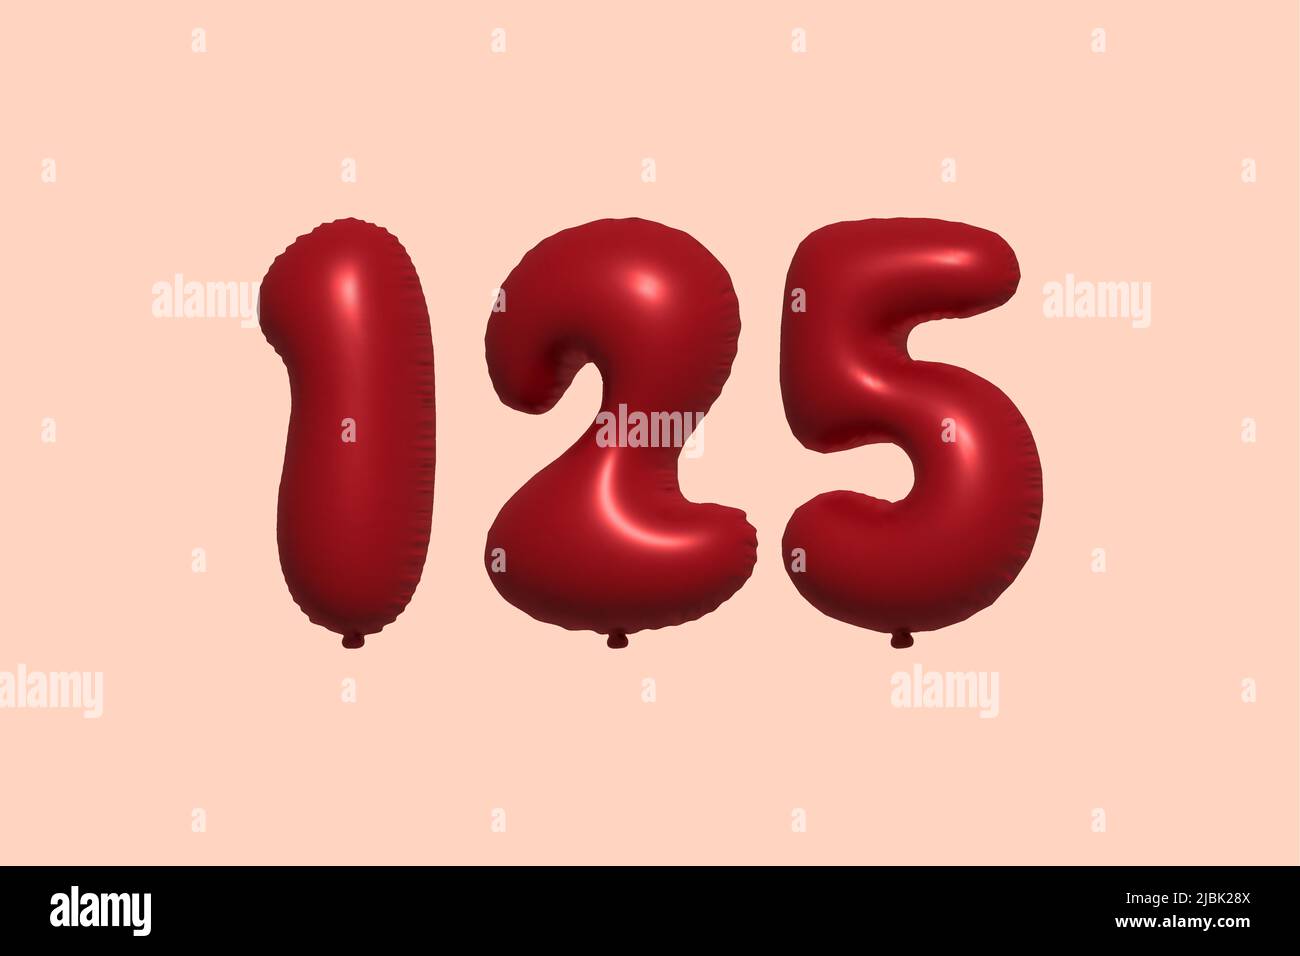 palloncino in numero 125 3d realizzato con rendering realistico di palloncino in aria metallica 3d. 3D palloncini di elio rosso per la vendita decorazione Party compleanno, celebrare anniversario, Vacanza nuziale. Illustrazione vettoriale Illustrazione Vettoriale